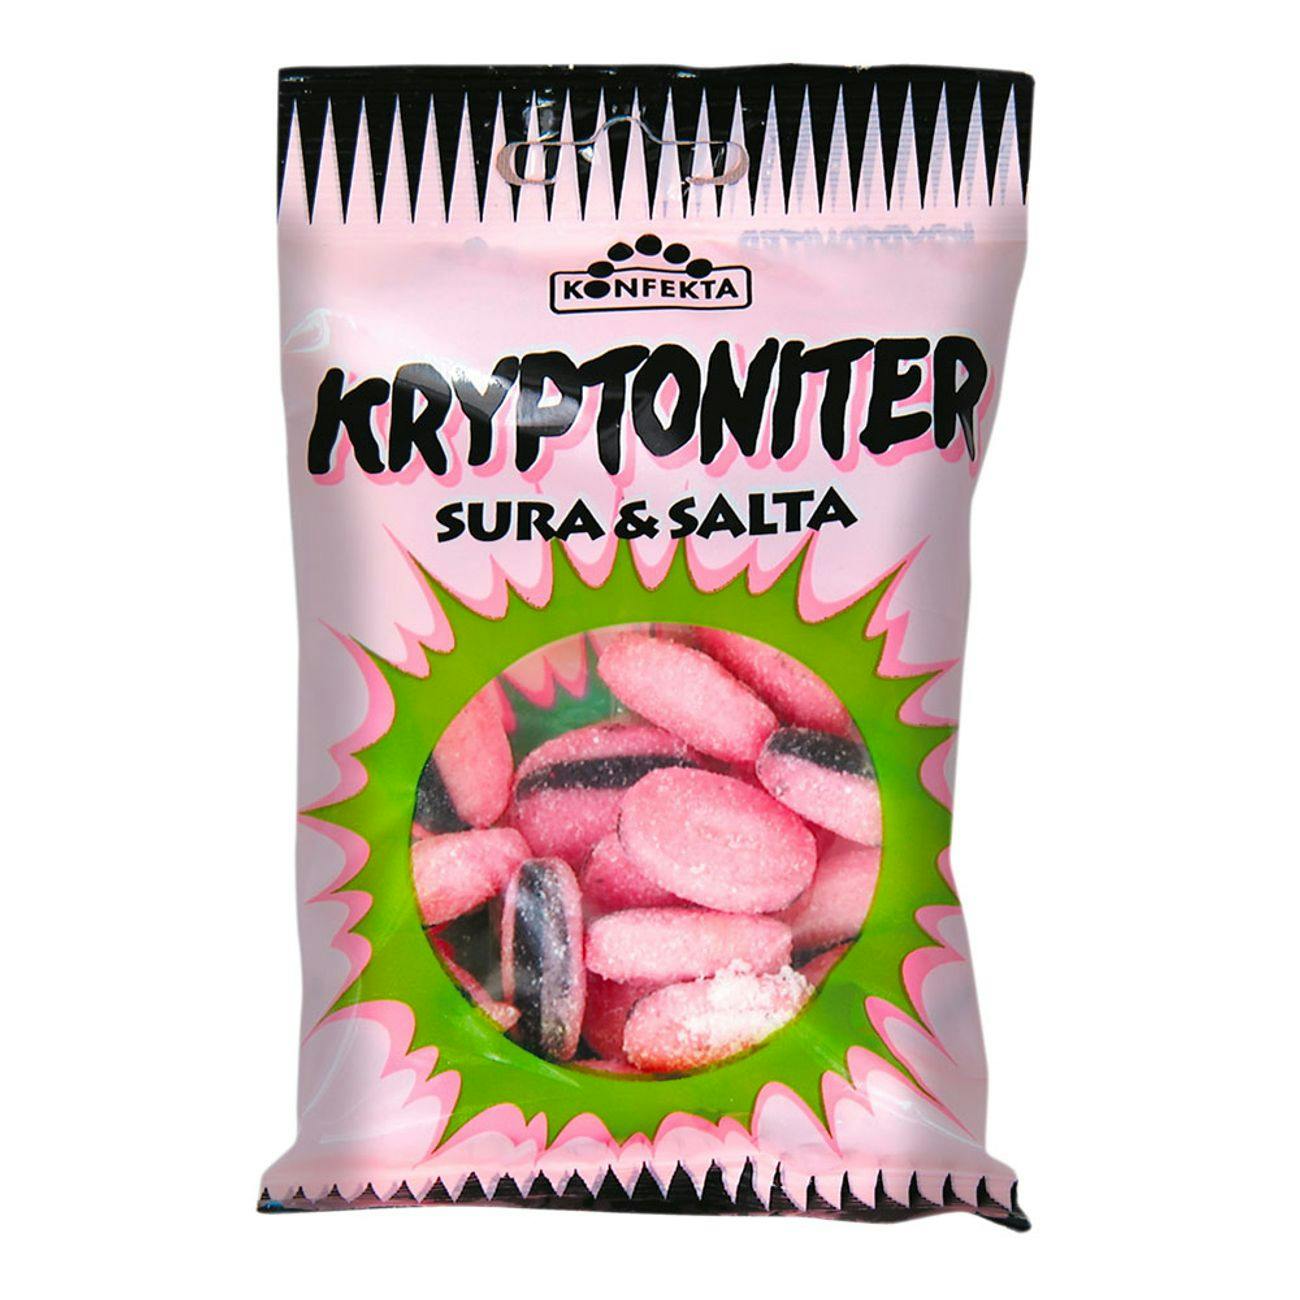 Konfekta criptonitro by Swedish Candy Store